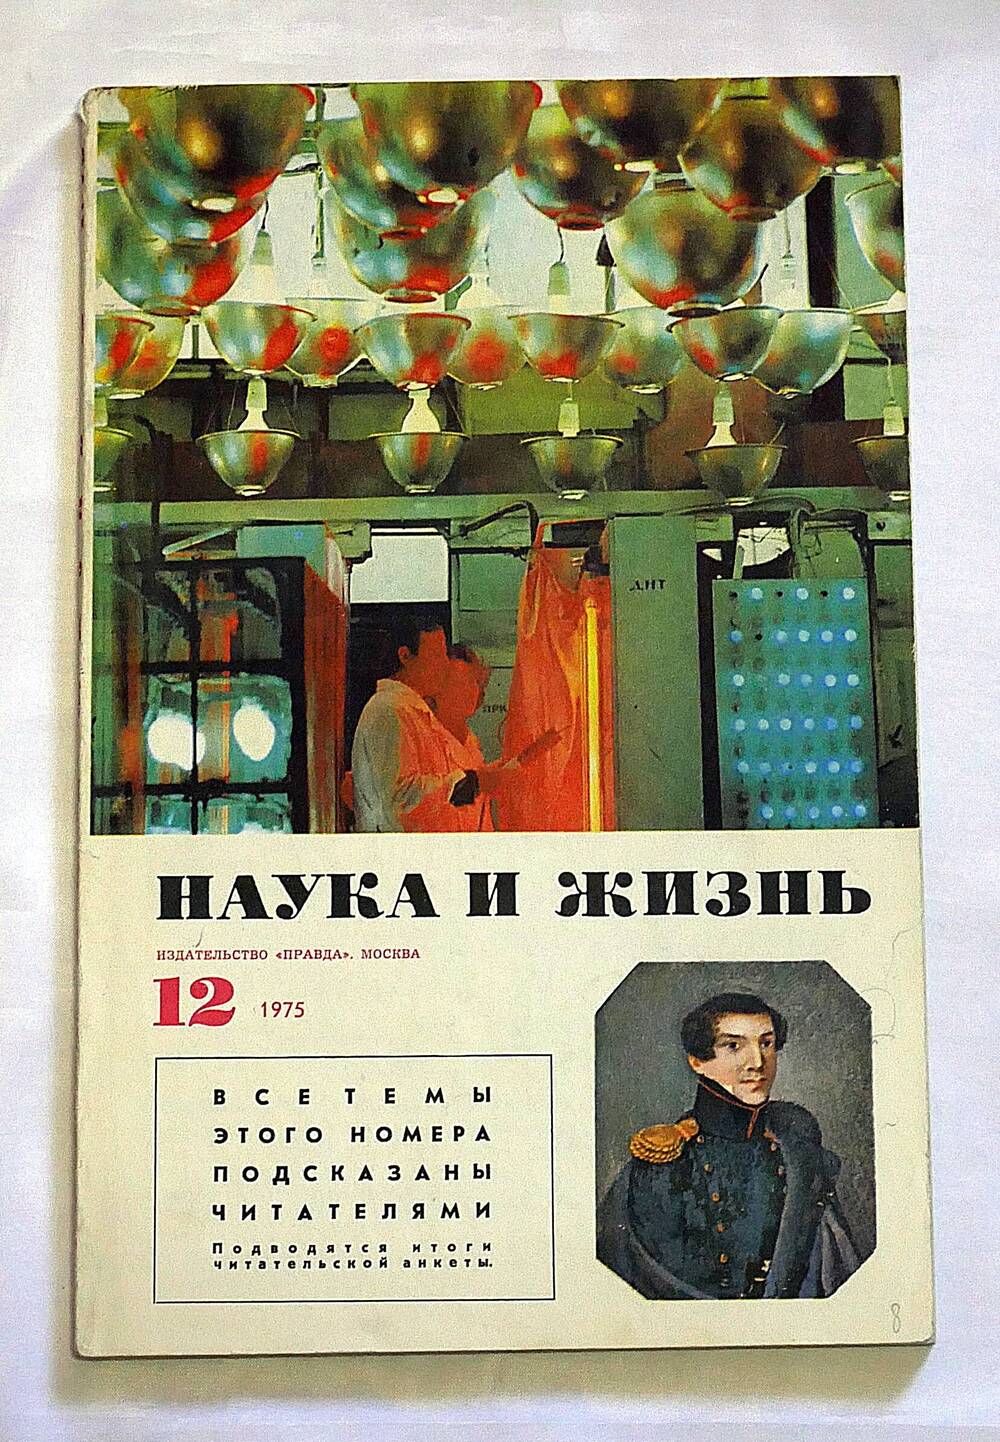 Журнал. Наука и жизнь. № 12 декабрь 1975 г.